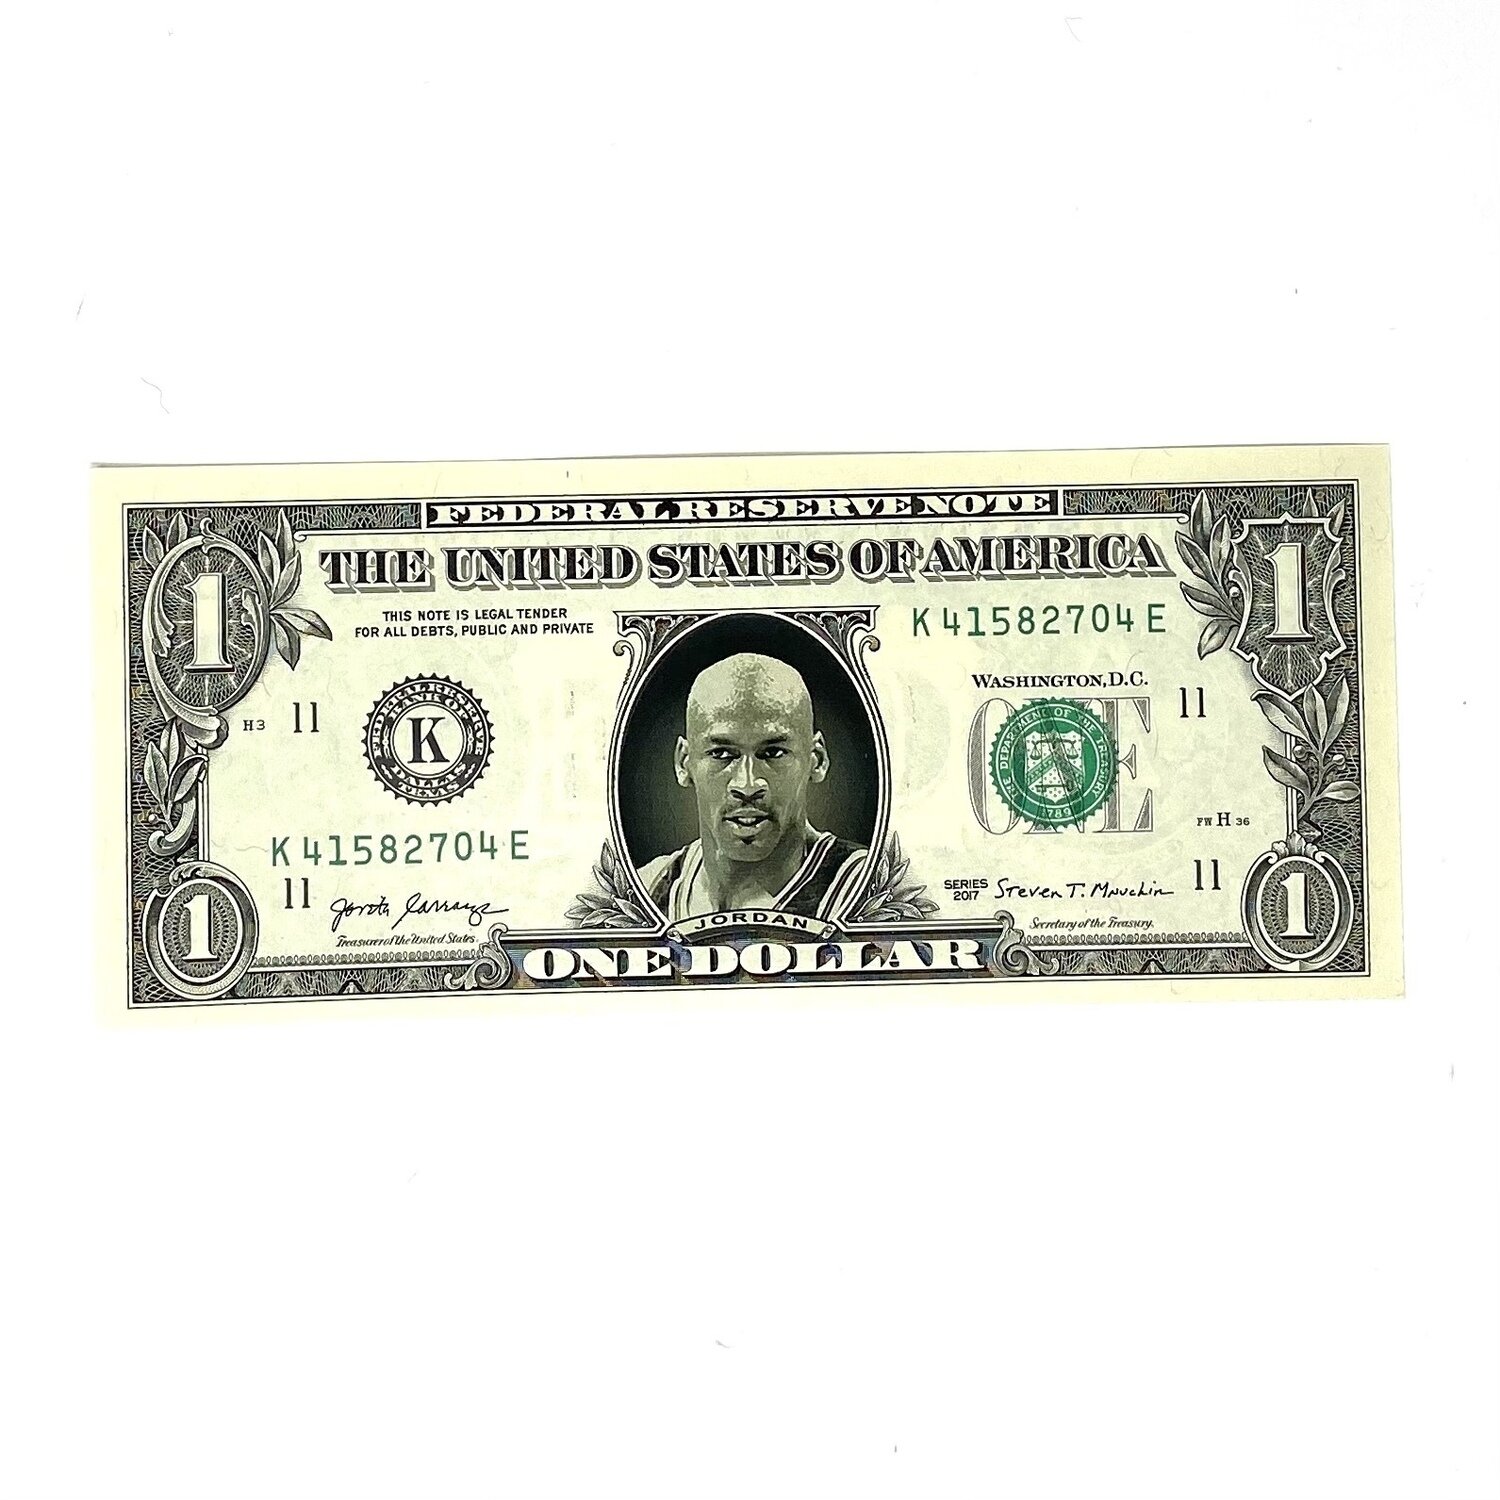 Michael Jordan Famous Face Dollar Bill